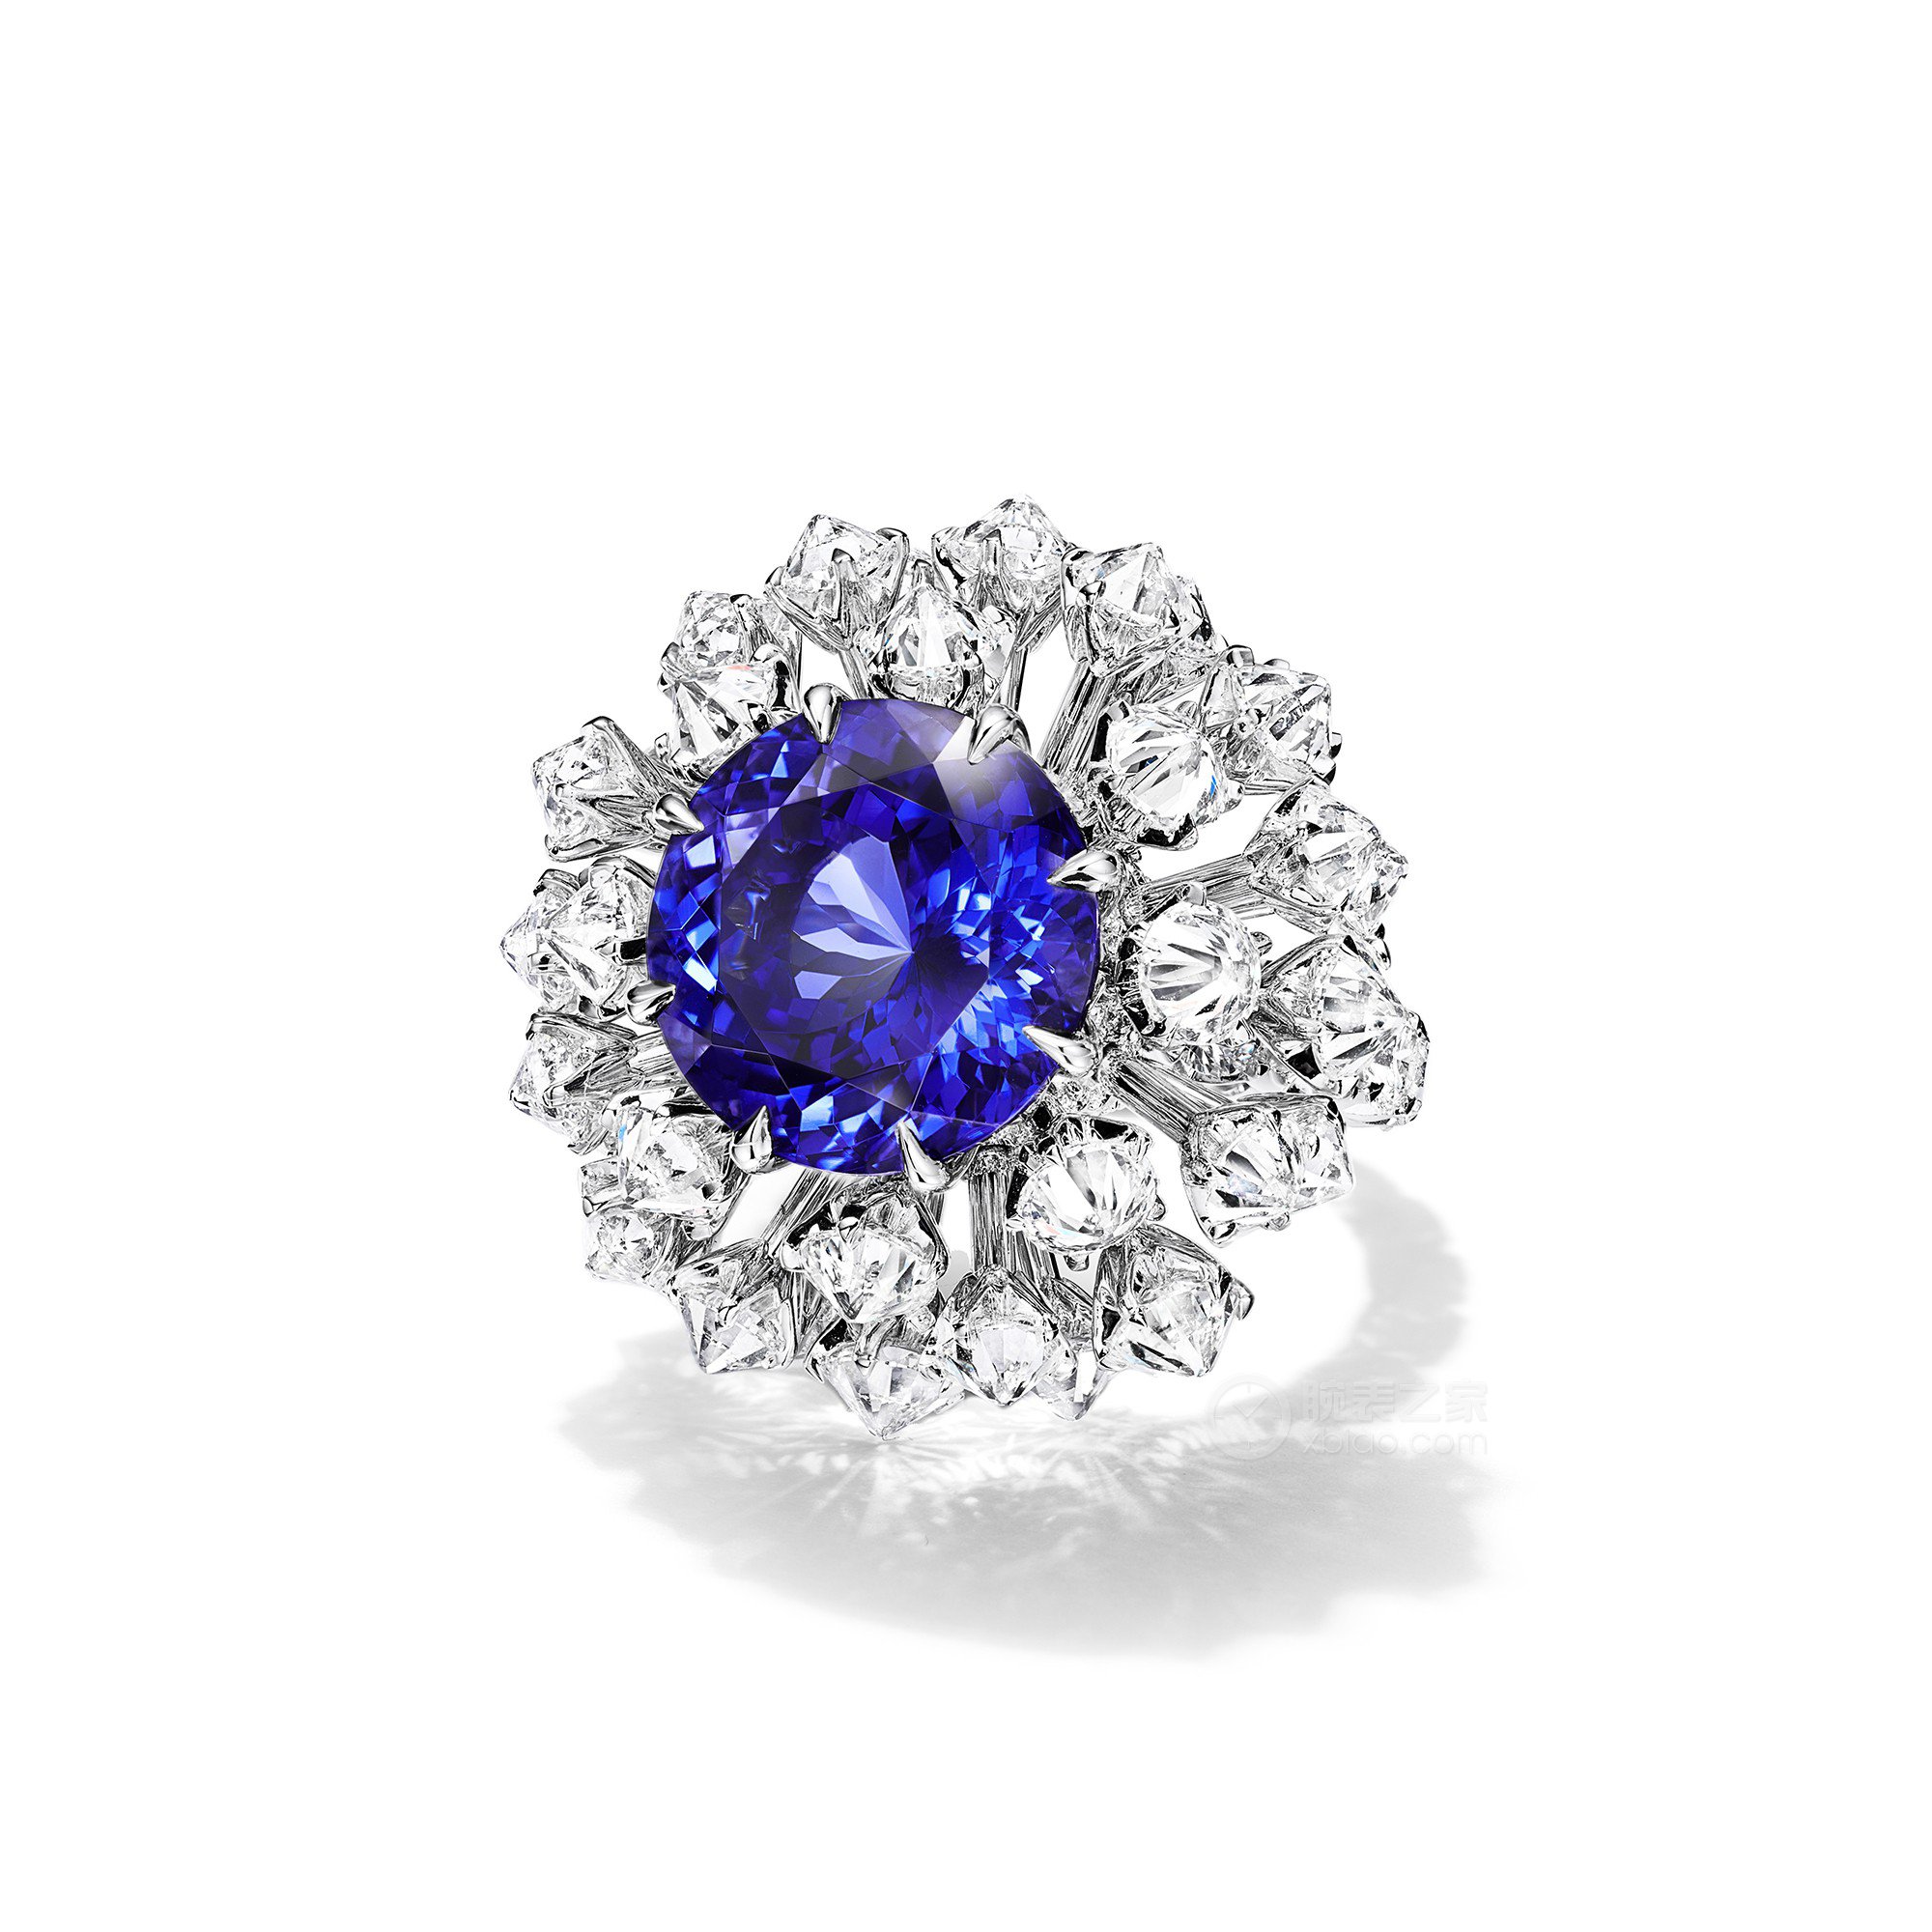 蒂芙尼BLUE BOOK高级珠宝18K白金镶嵌一颗重逾11克拉的坦桑石及钻石戒指戒指